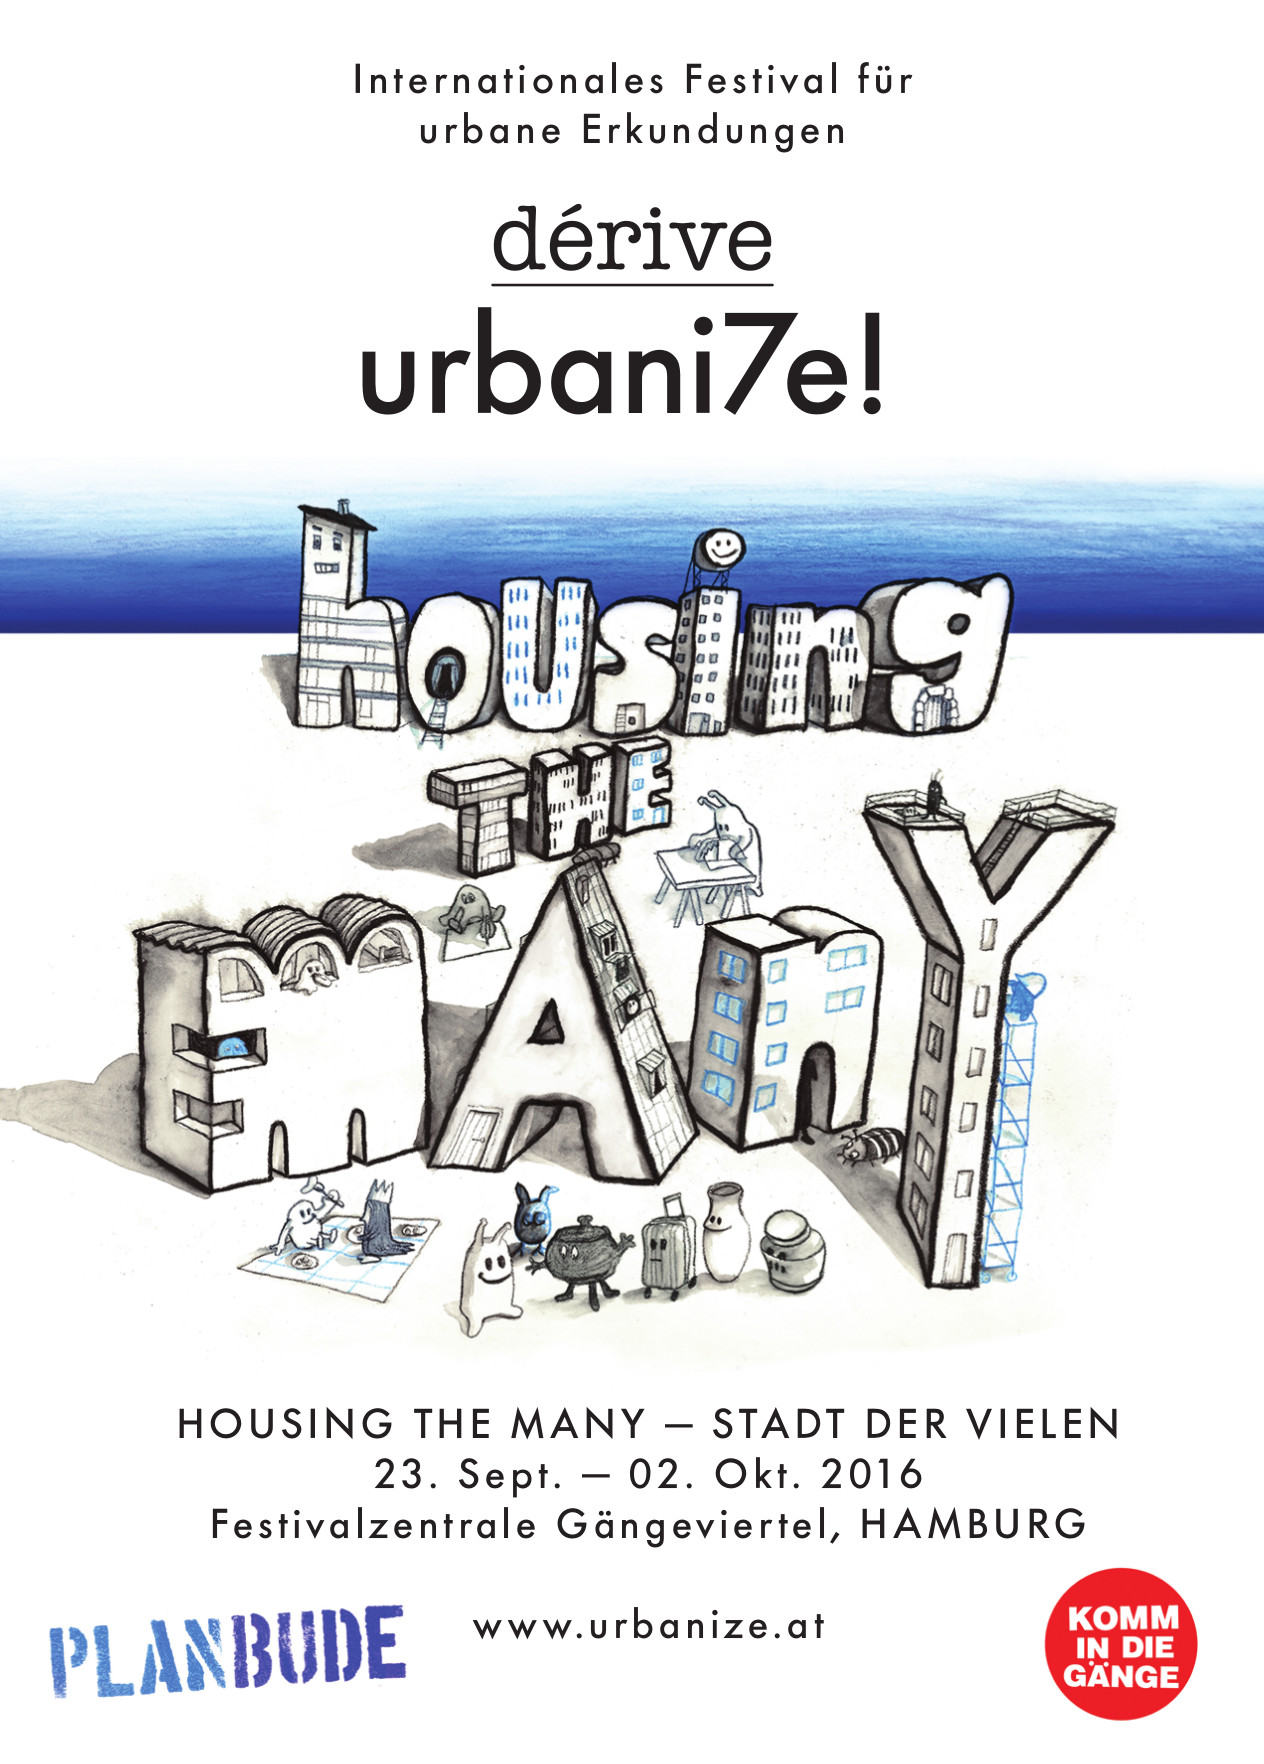 Urbanize! 2016 – Housing the Many – Programm Hamburg